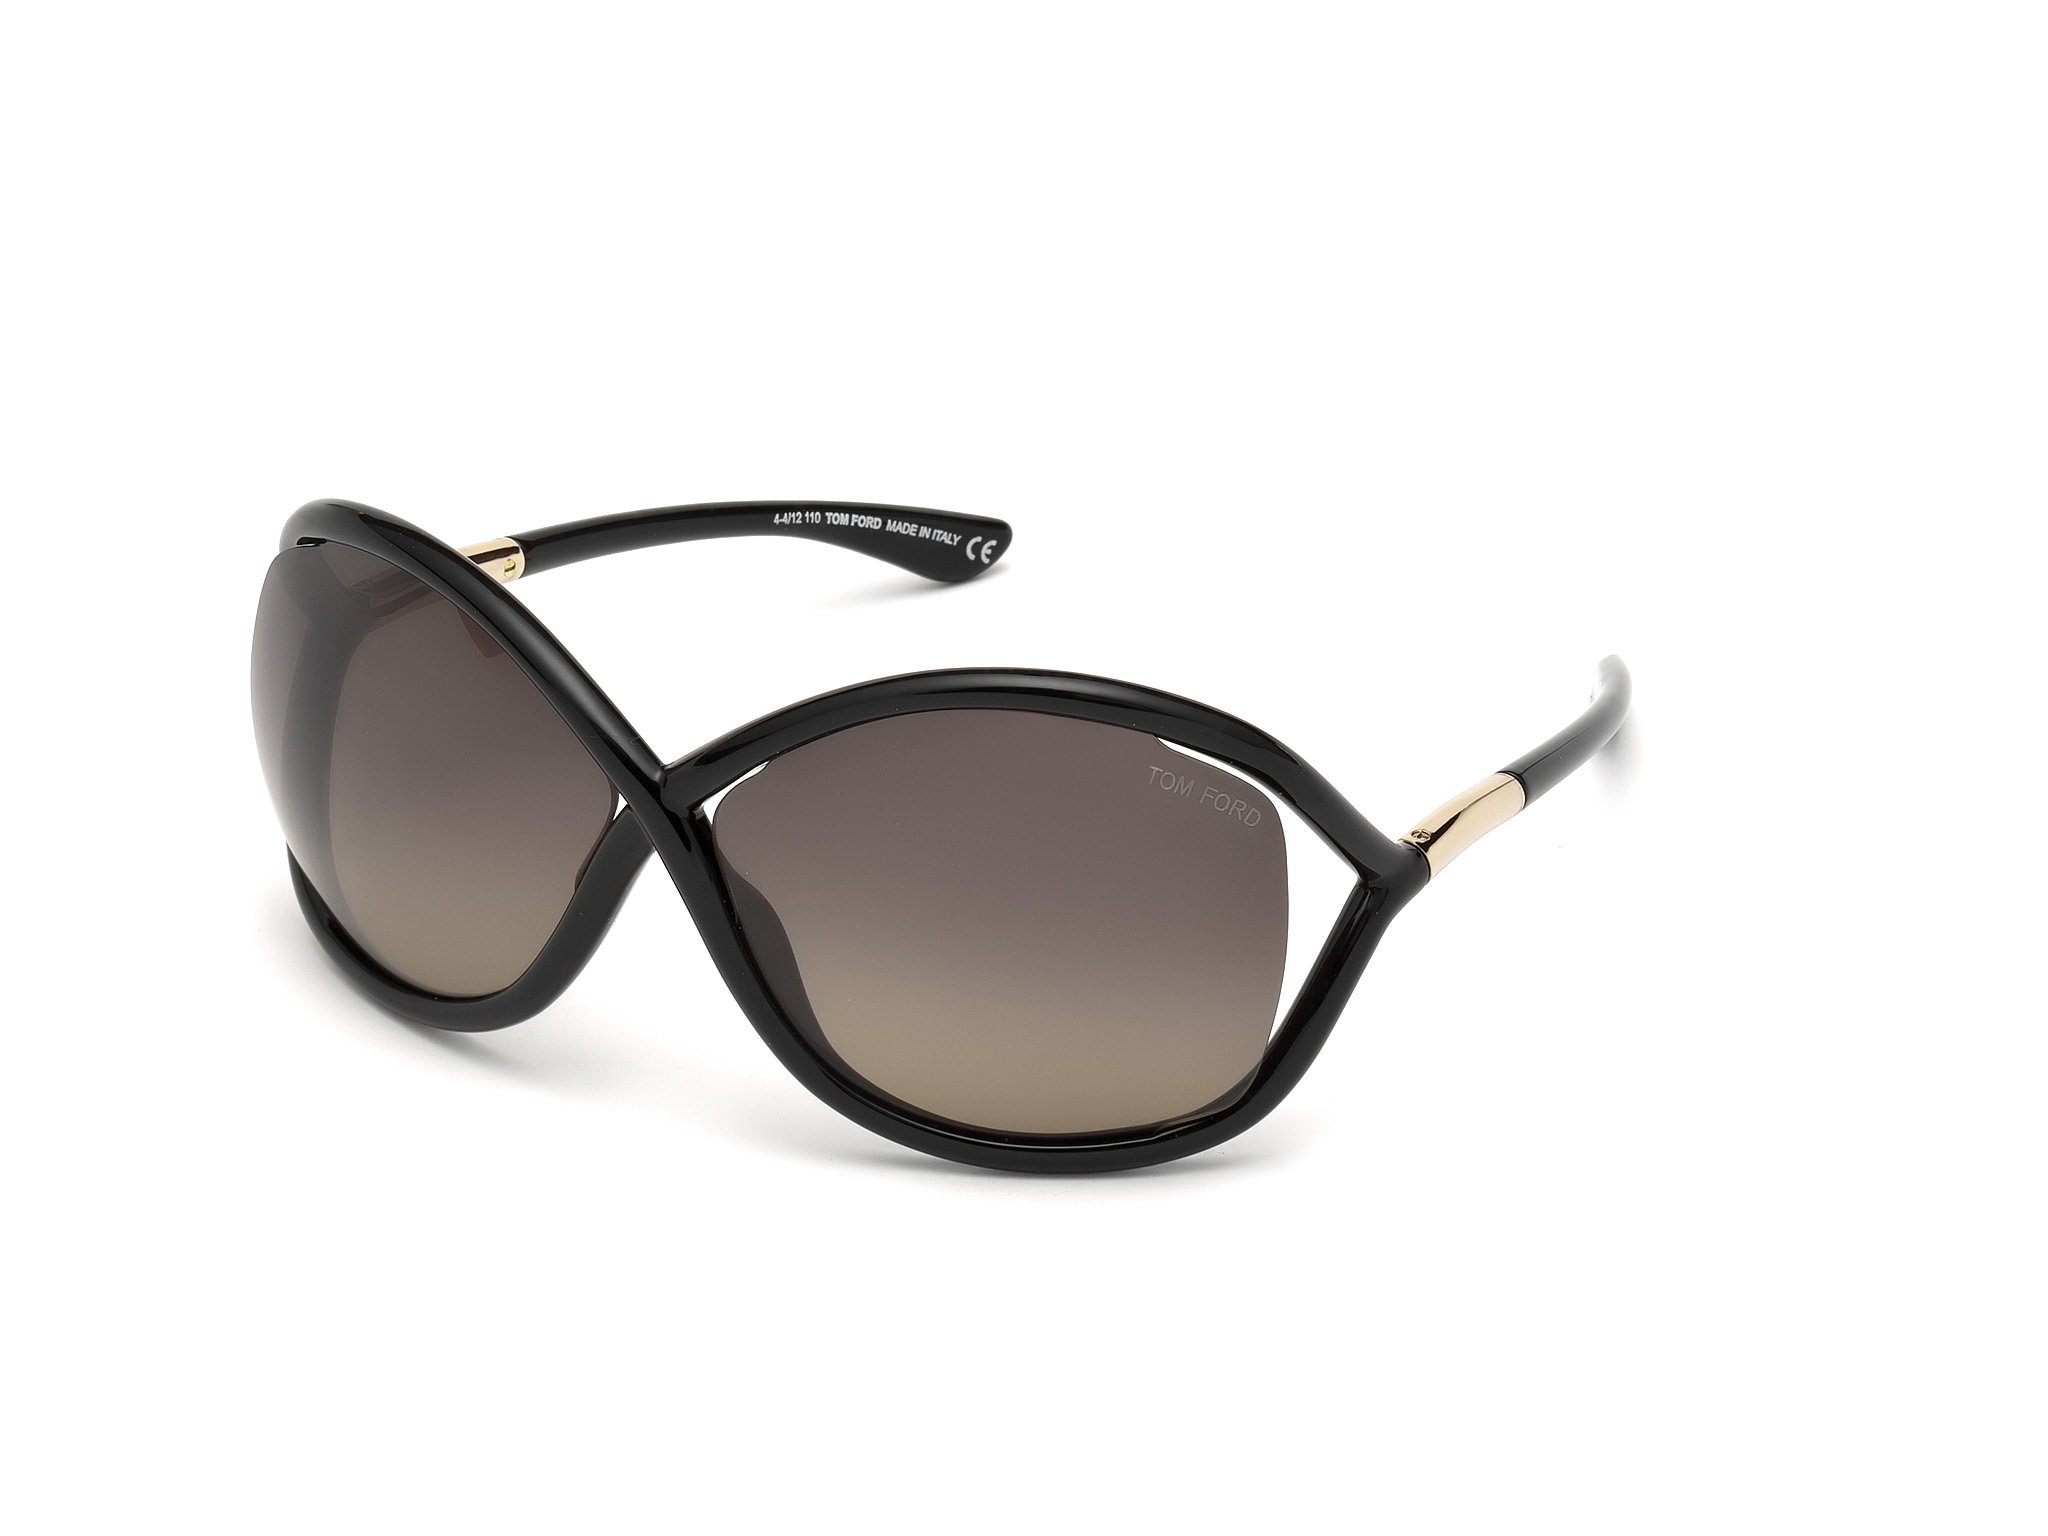 Das Bild zeigt die Sonnenbrille Whitney FT0009 von der Marke Tom Ford in schwarz